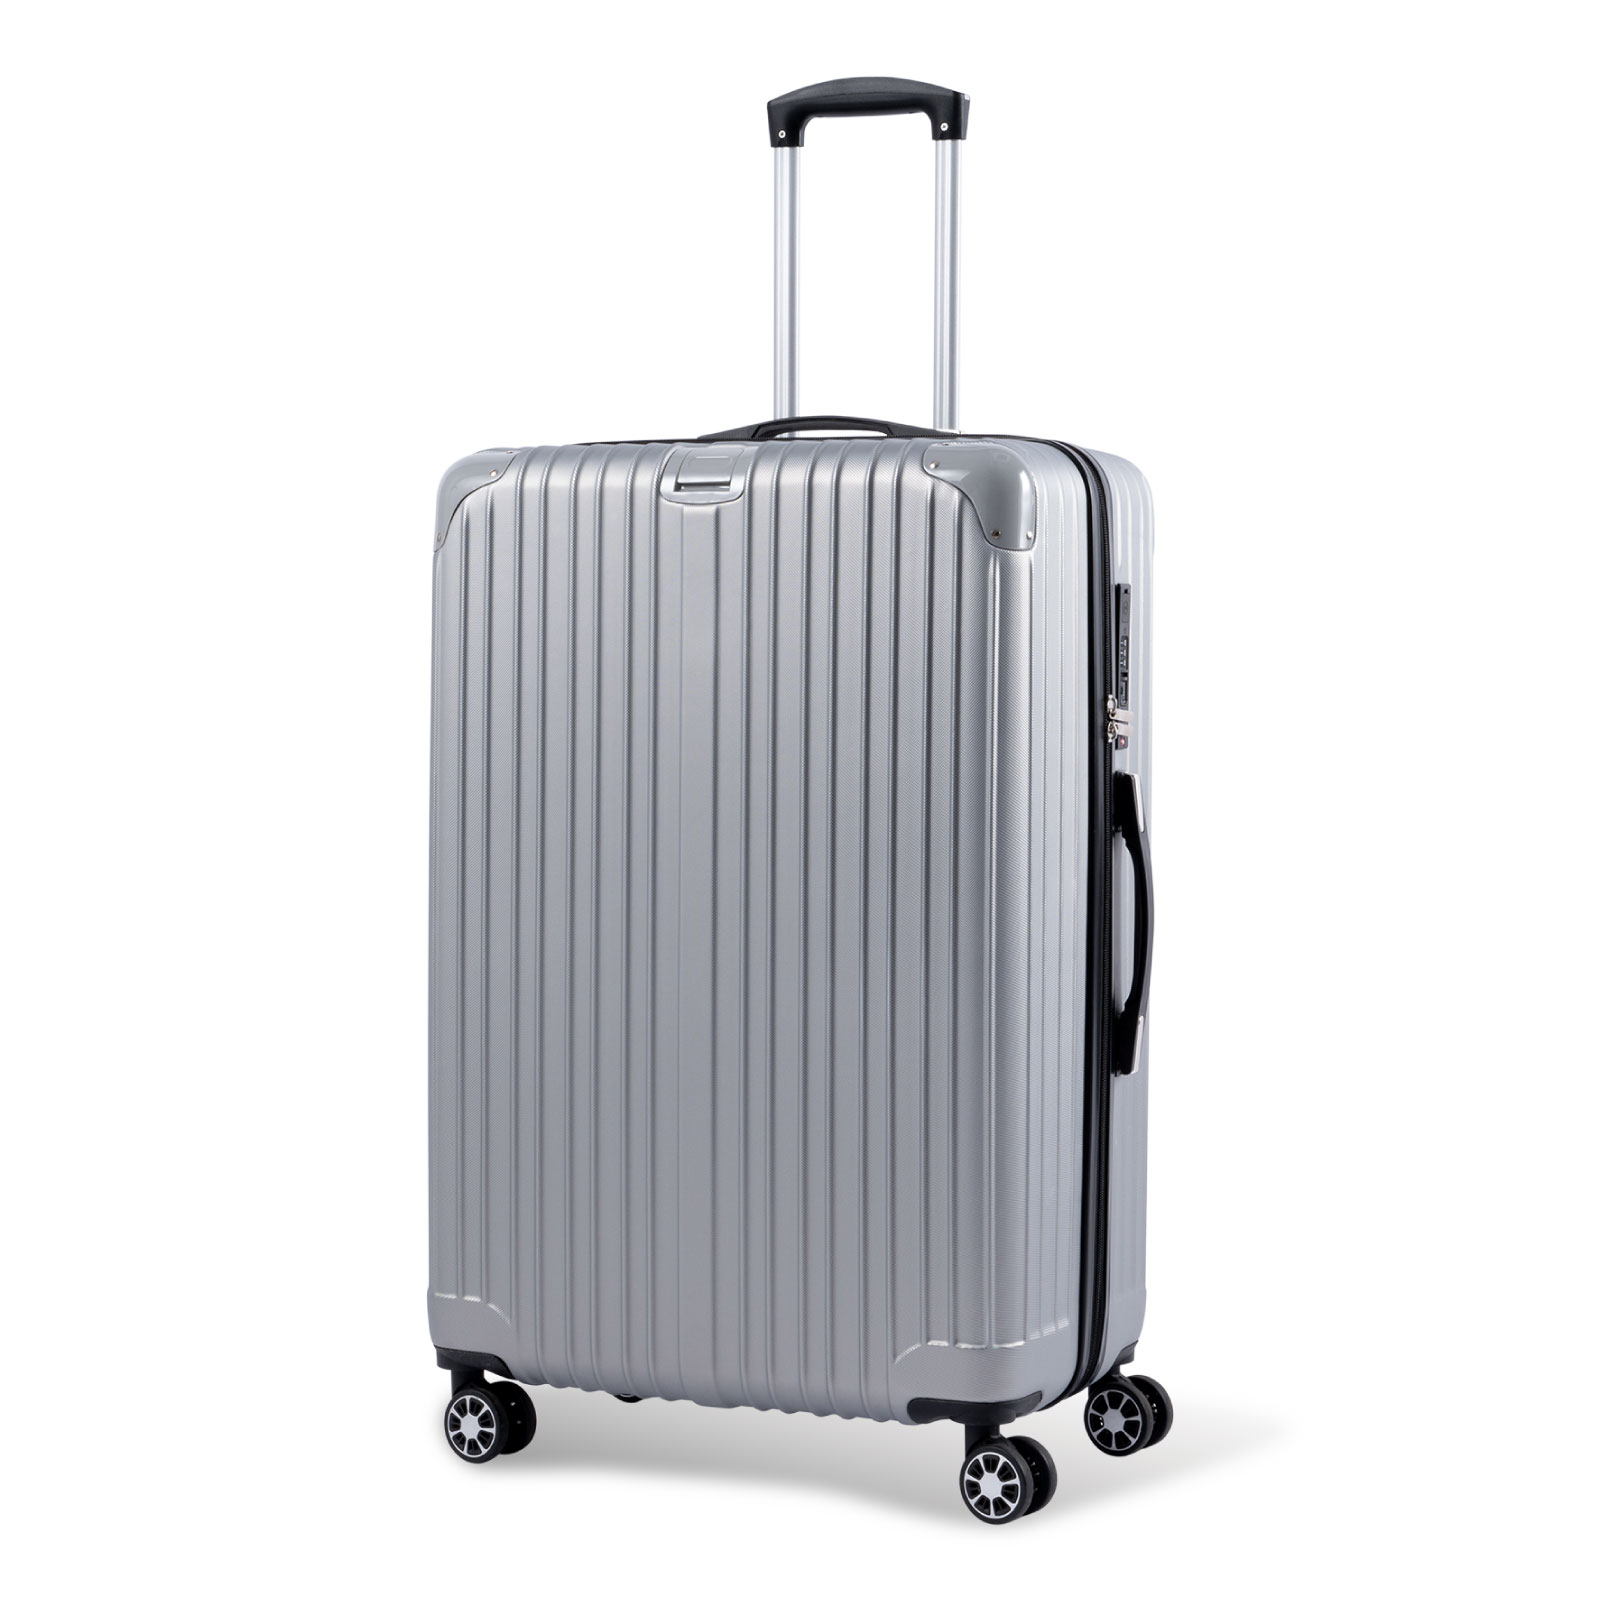 スーツケース キャリーバッグ キャリーケース 大容量 Lサイズ 軽量 静音 大型 ダブルキャスター 360度回転 TSAローク搭載 ファスナー式  ビジネス 出張 旅行